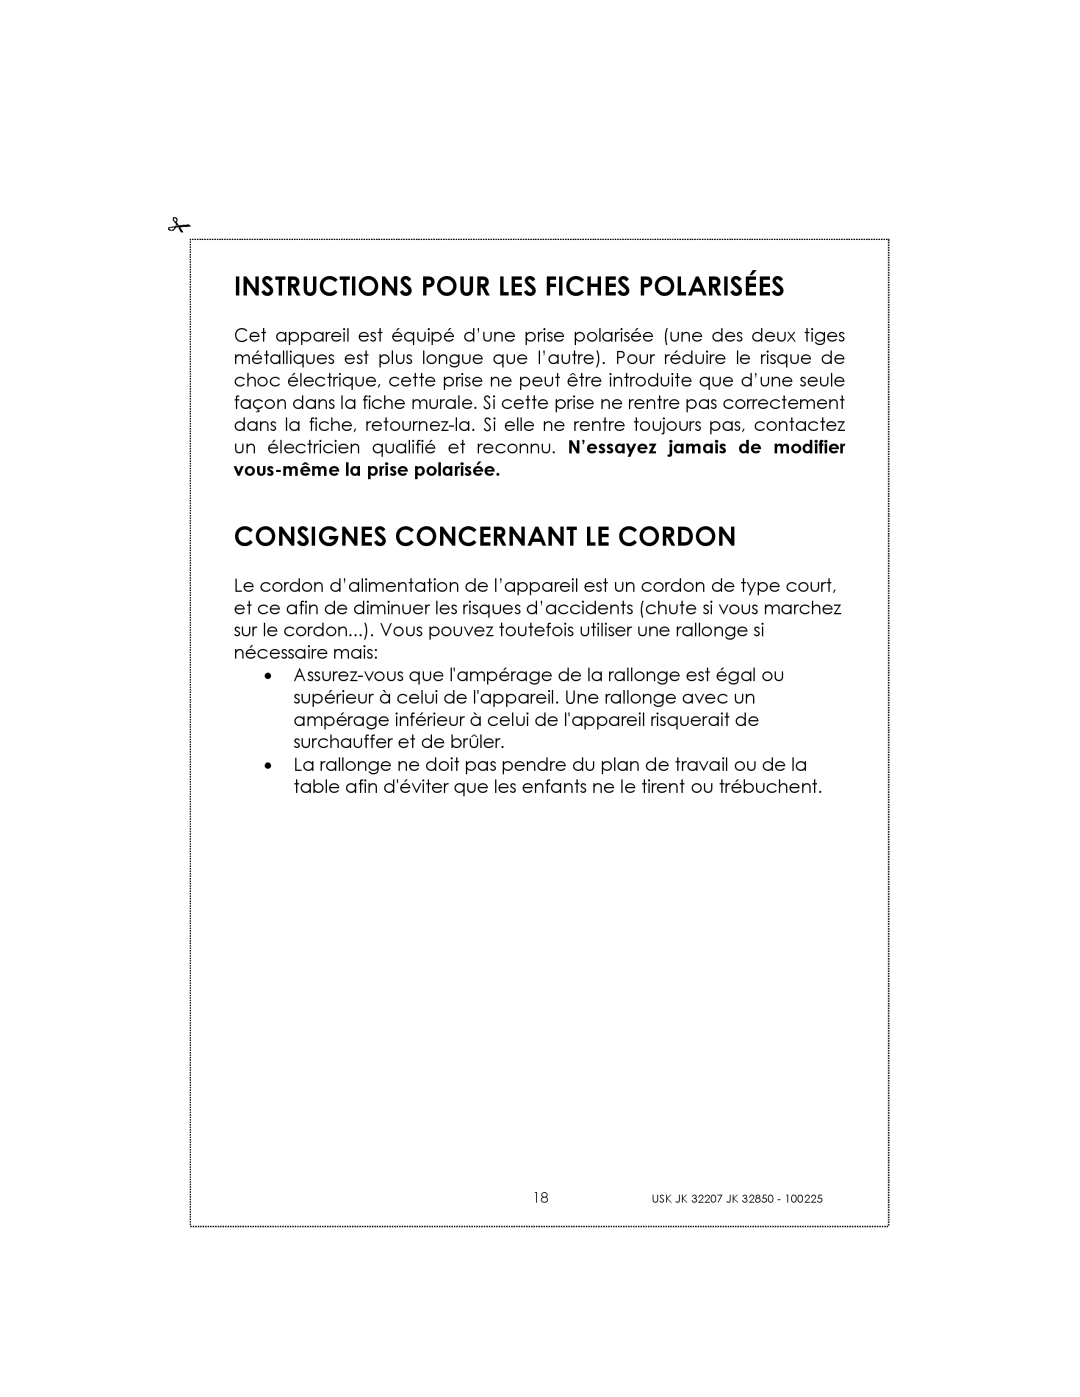 Kalorik USK JK 32850, USK JK 32207 manual Instructions Pour Les Fiches Polarisées, Consignes Concernant Le Cordon 